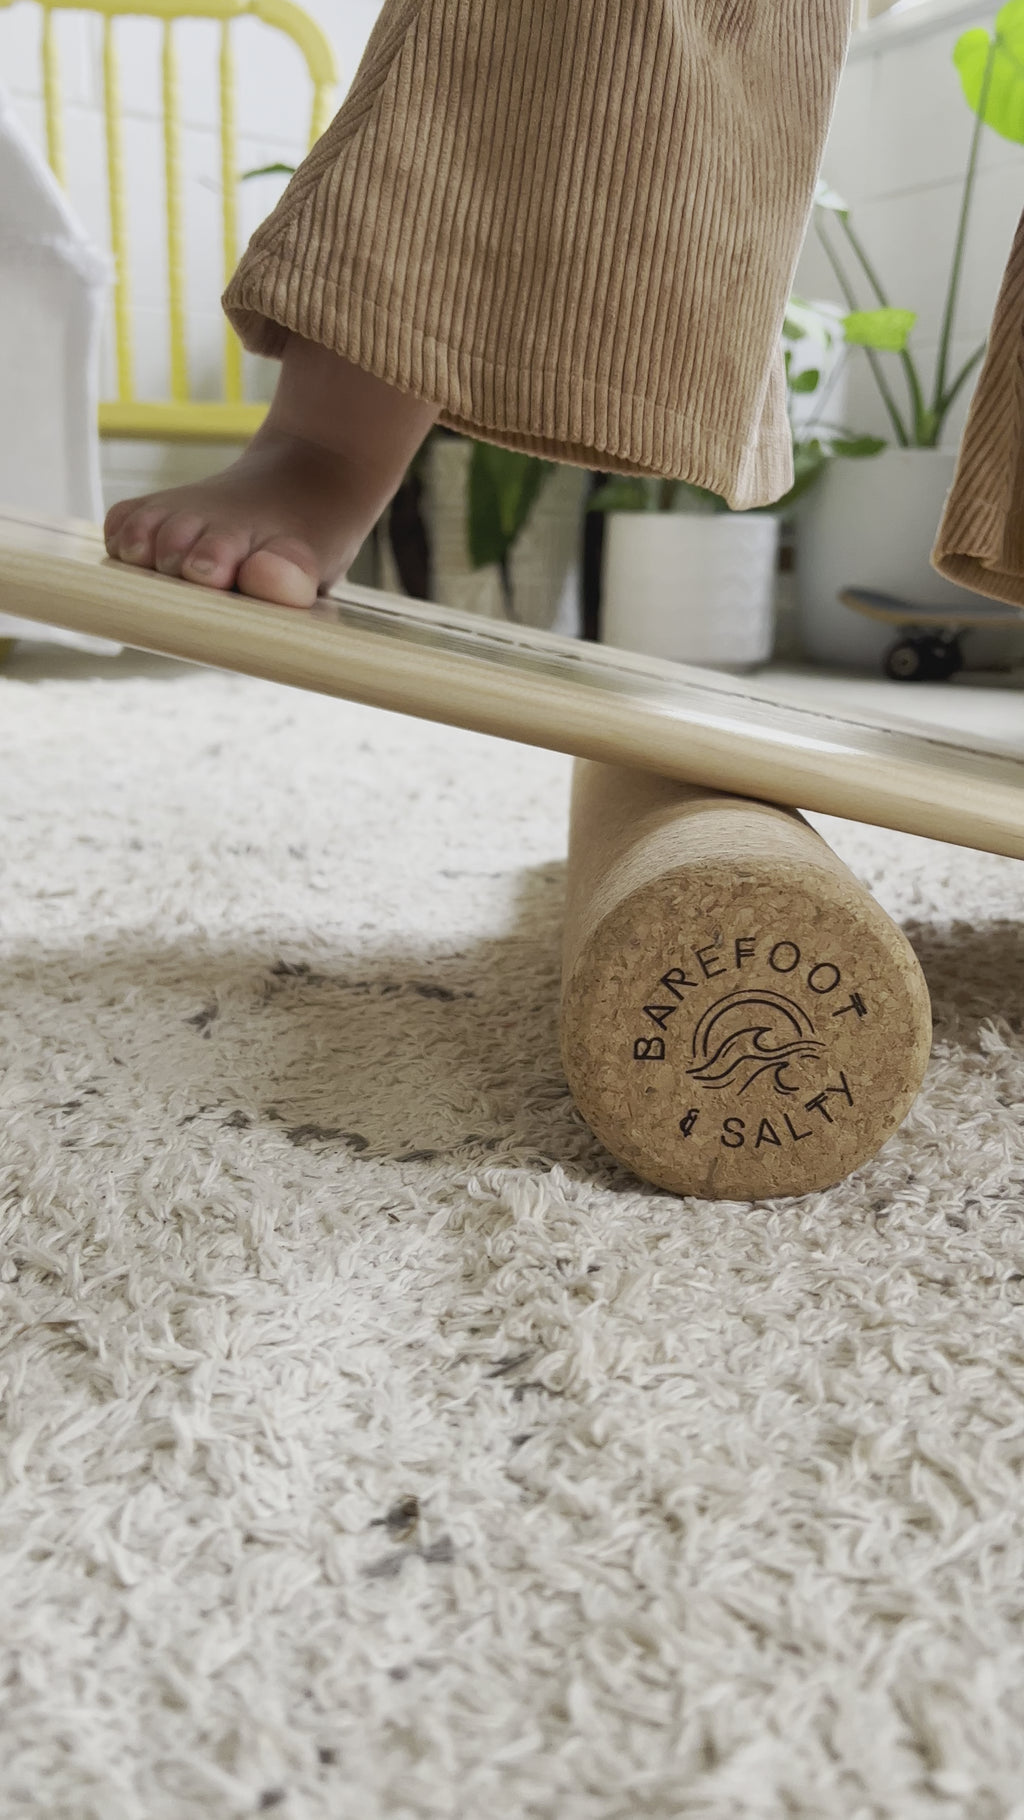 ALAVA Wooden Balance Board With Natural Cork Roller Scandinavian